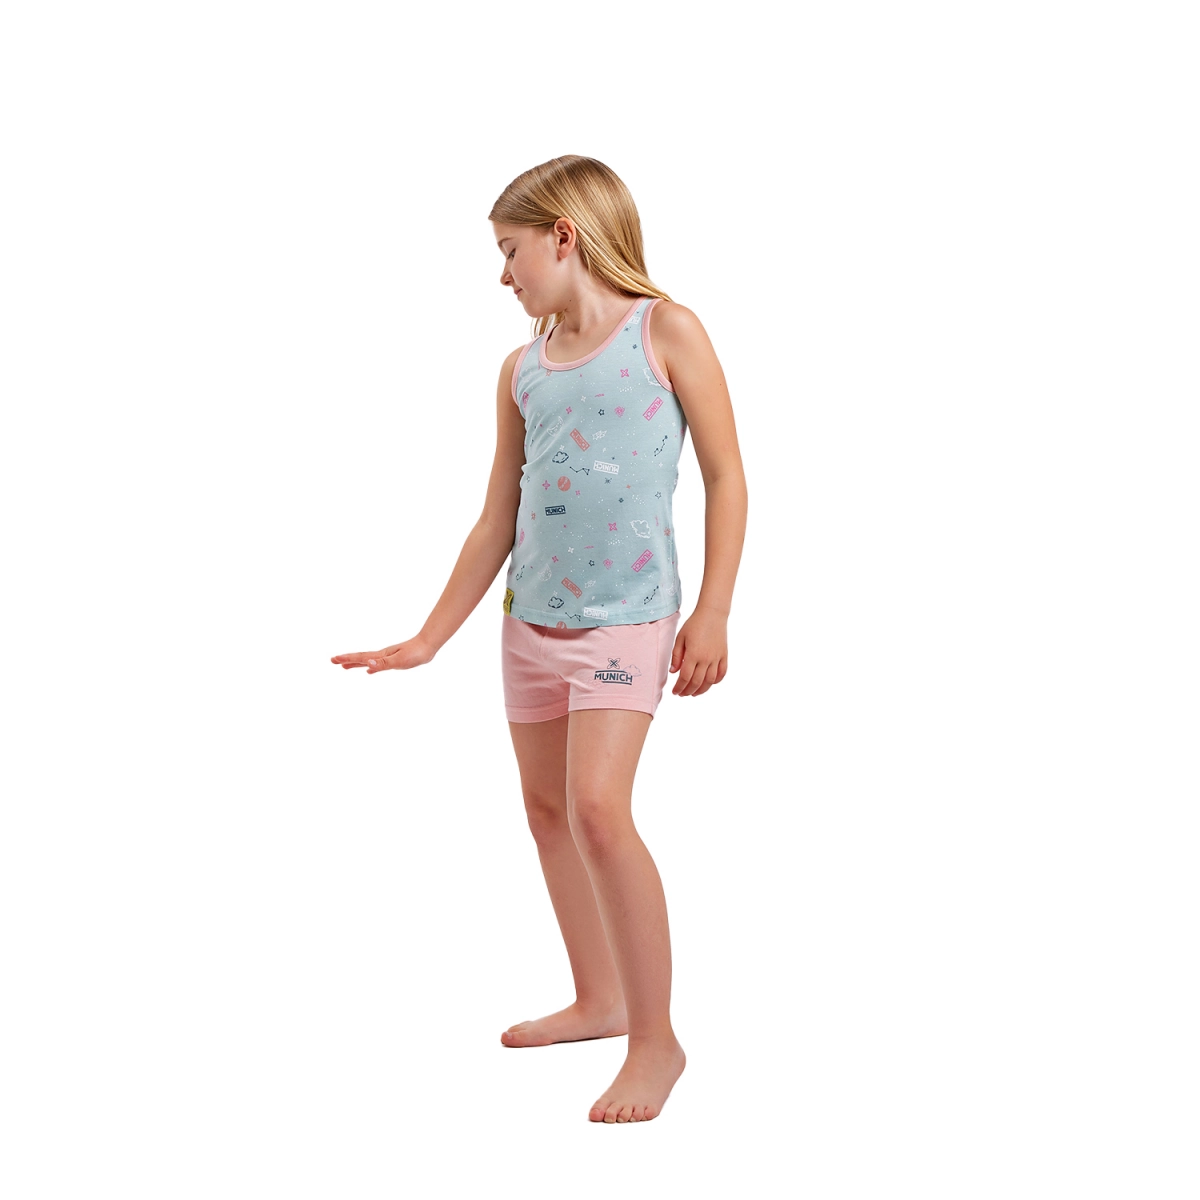 Pijama de tirantes y cuello redondo Munich DH1200 niña Talla: 3 AÑOS Color: Multicolor DH1200.3 AÑOS